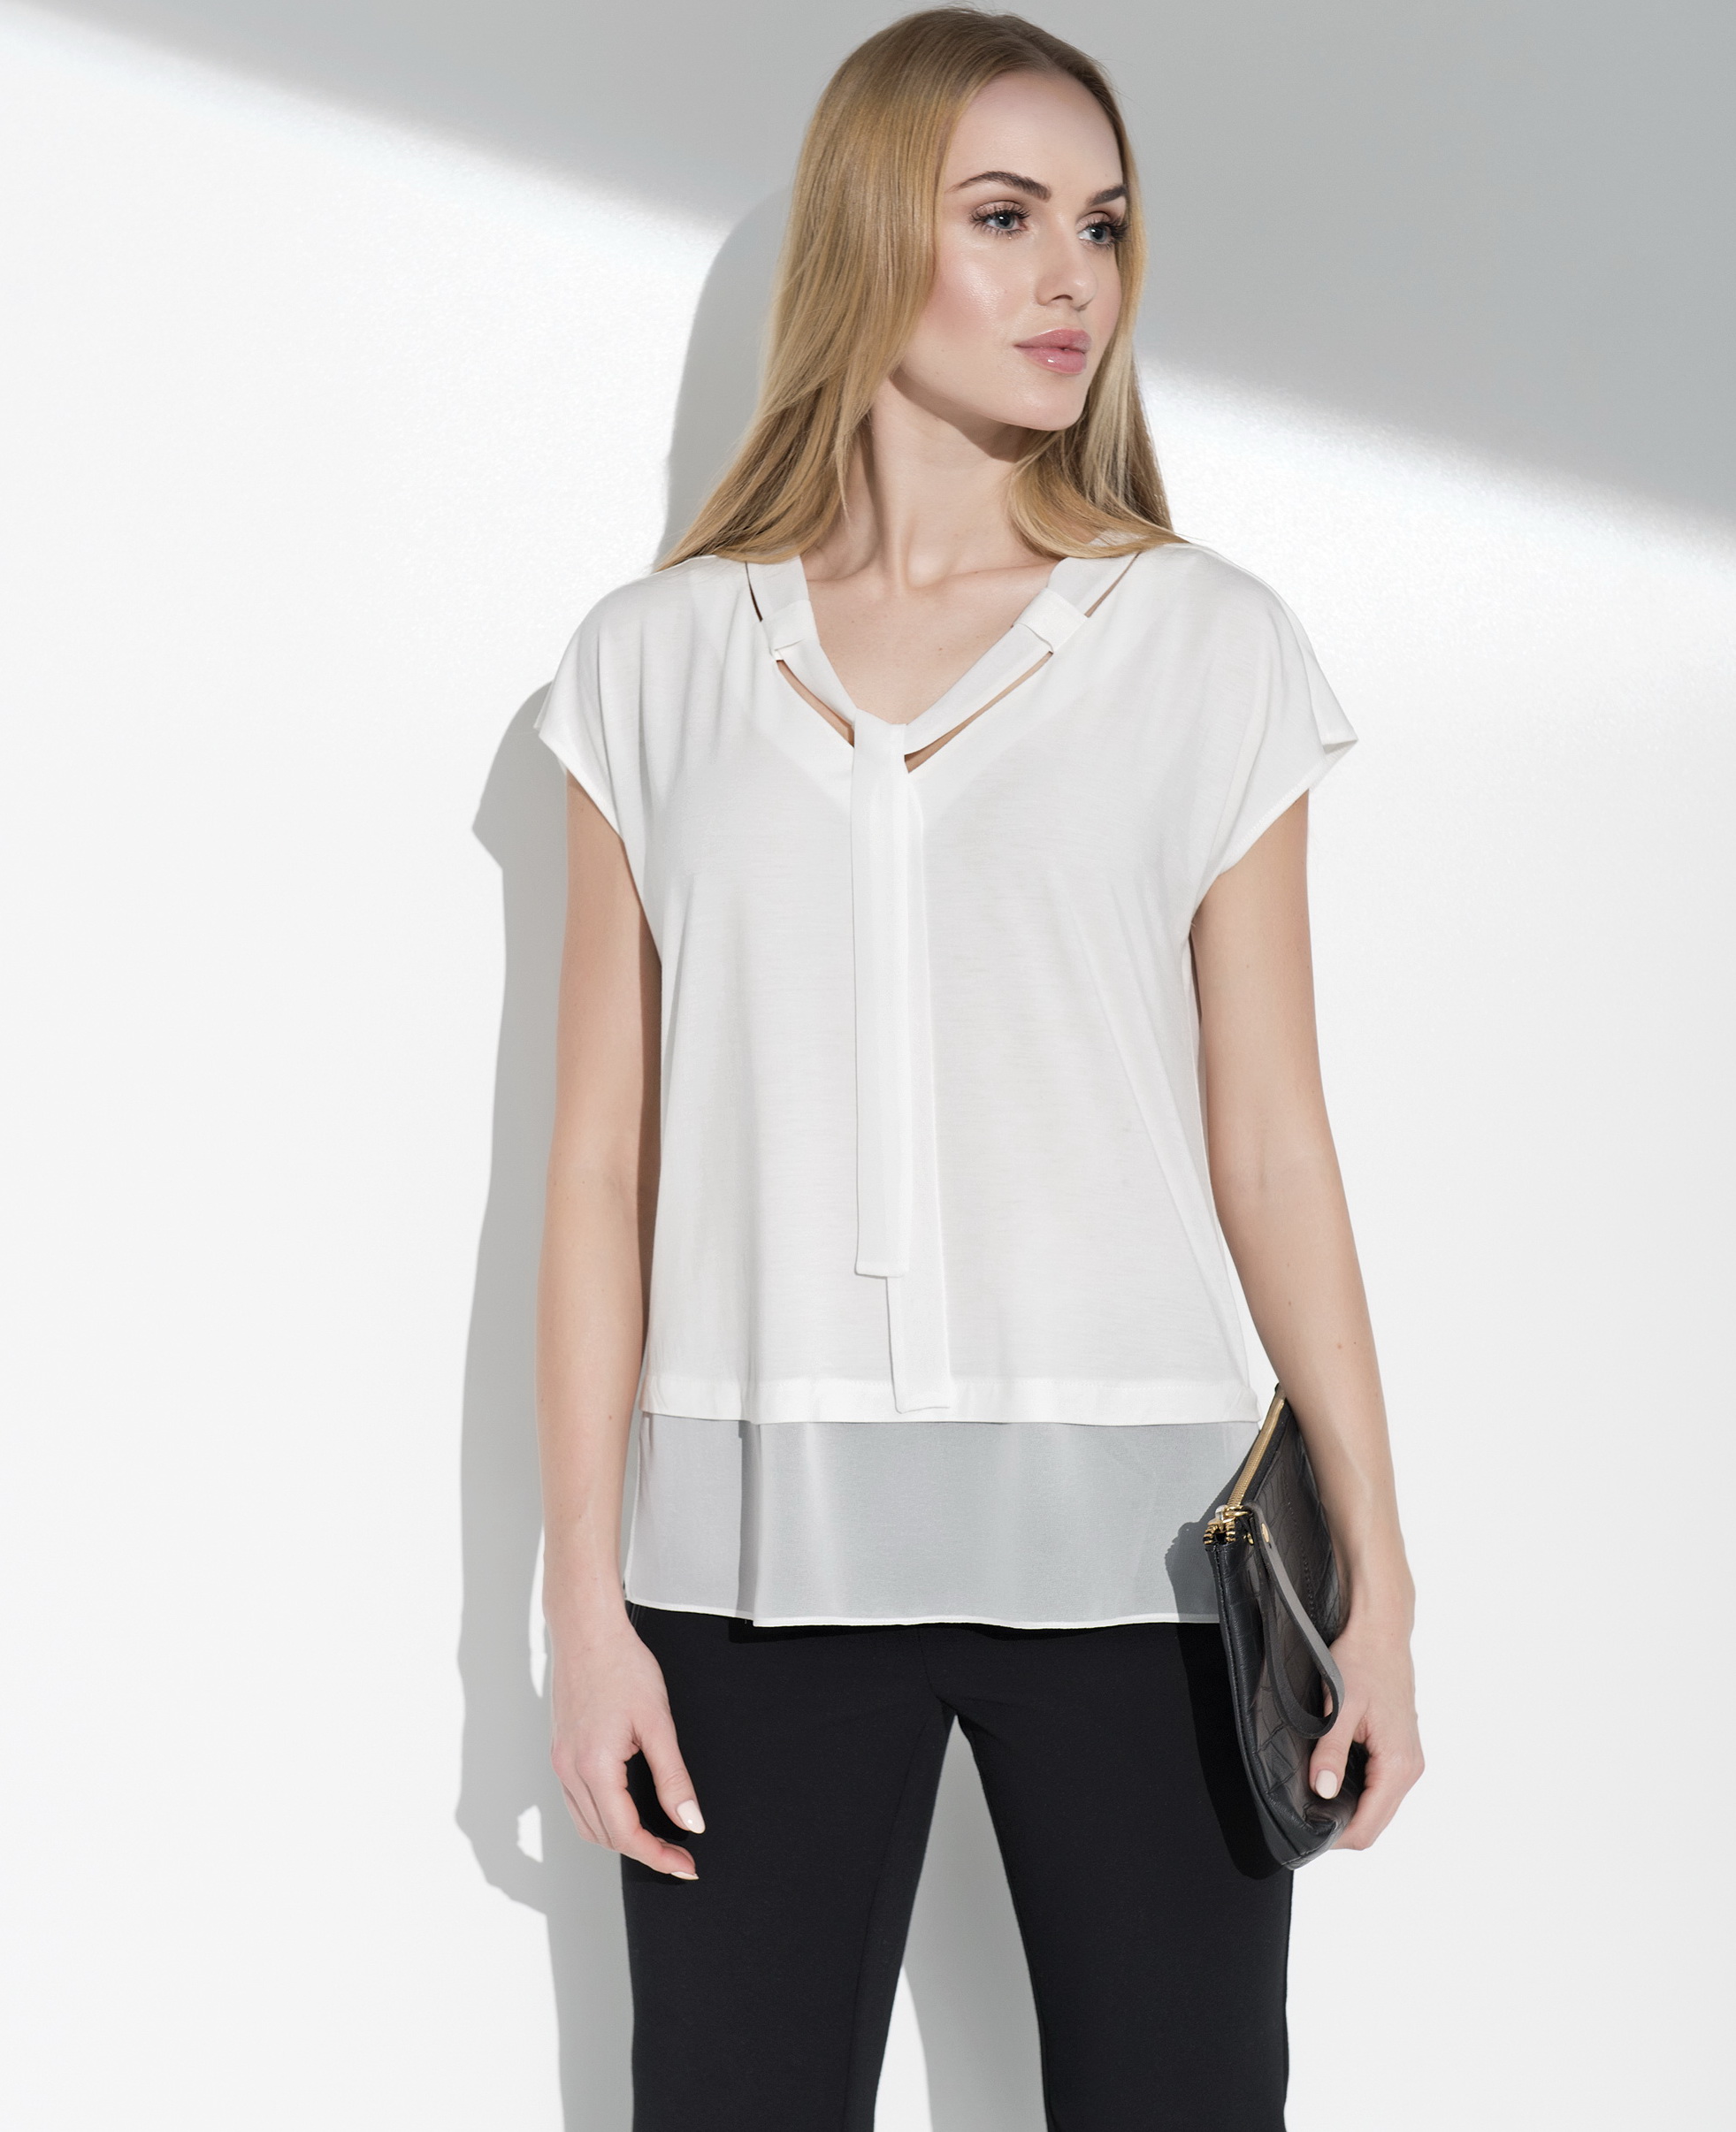 Блузка Sunwear. Sunwear i21-3-02 блузка. Польские блузки. Блузки Польша. Женские блузки польша